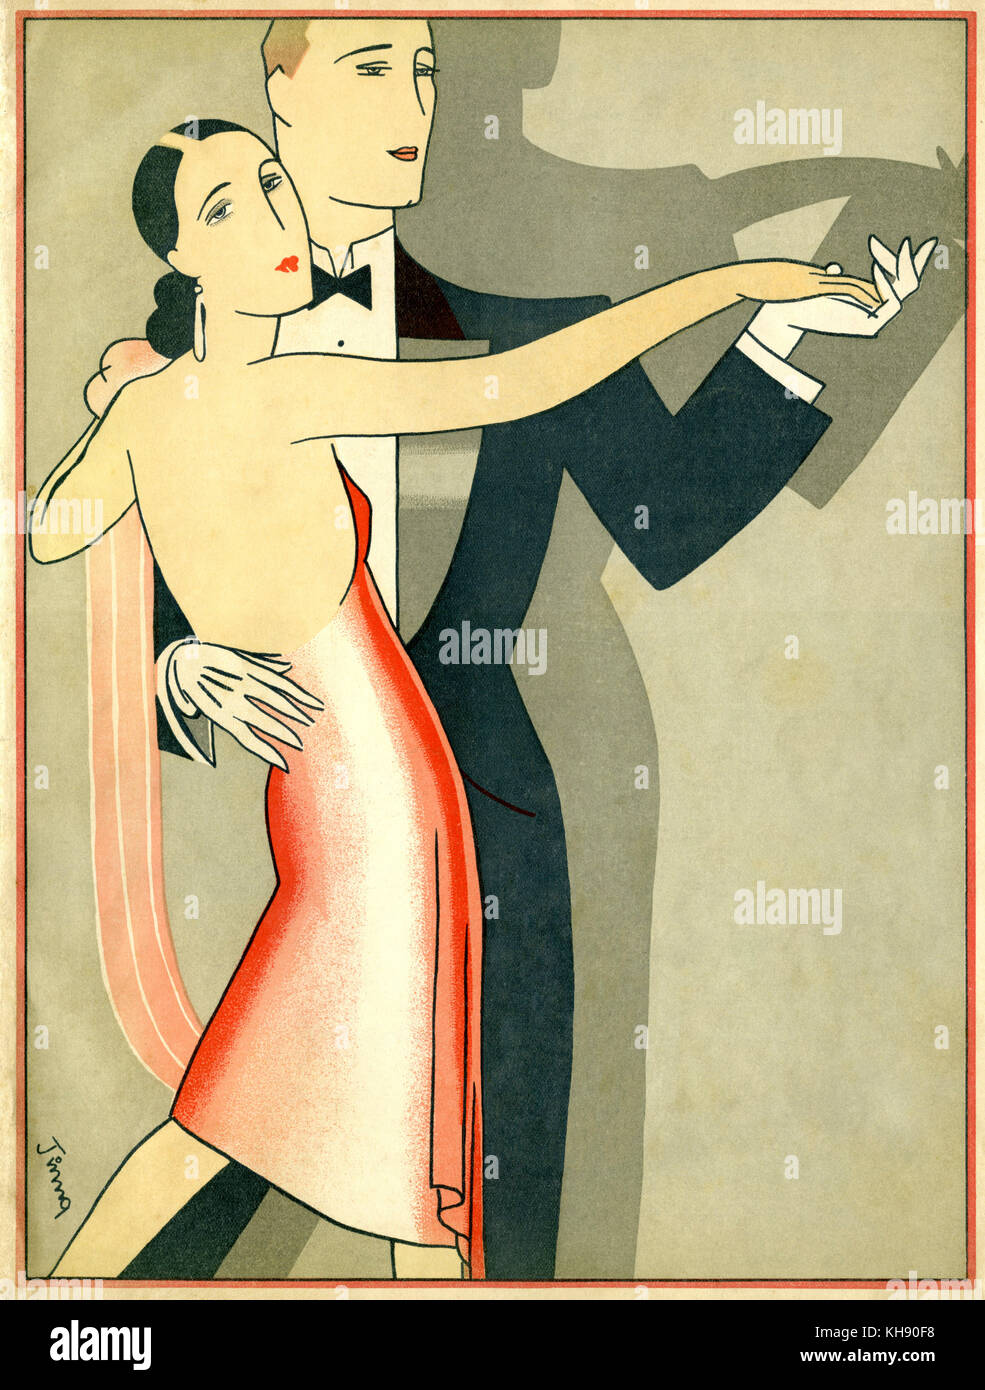 La danse de couple en tenue de soirée, fin des années 1920 / début des années 1930. Illustration tchèque. Artiste inconnu. Banque D'Images